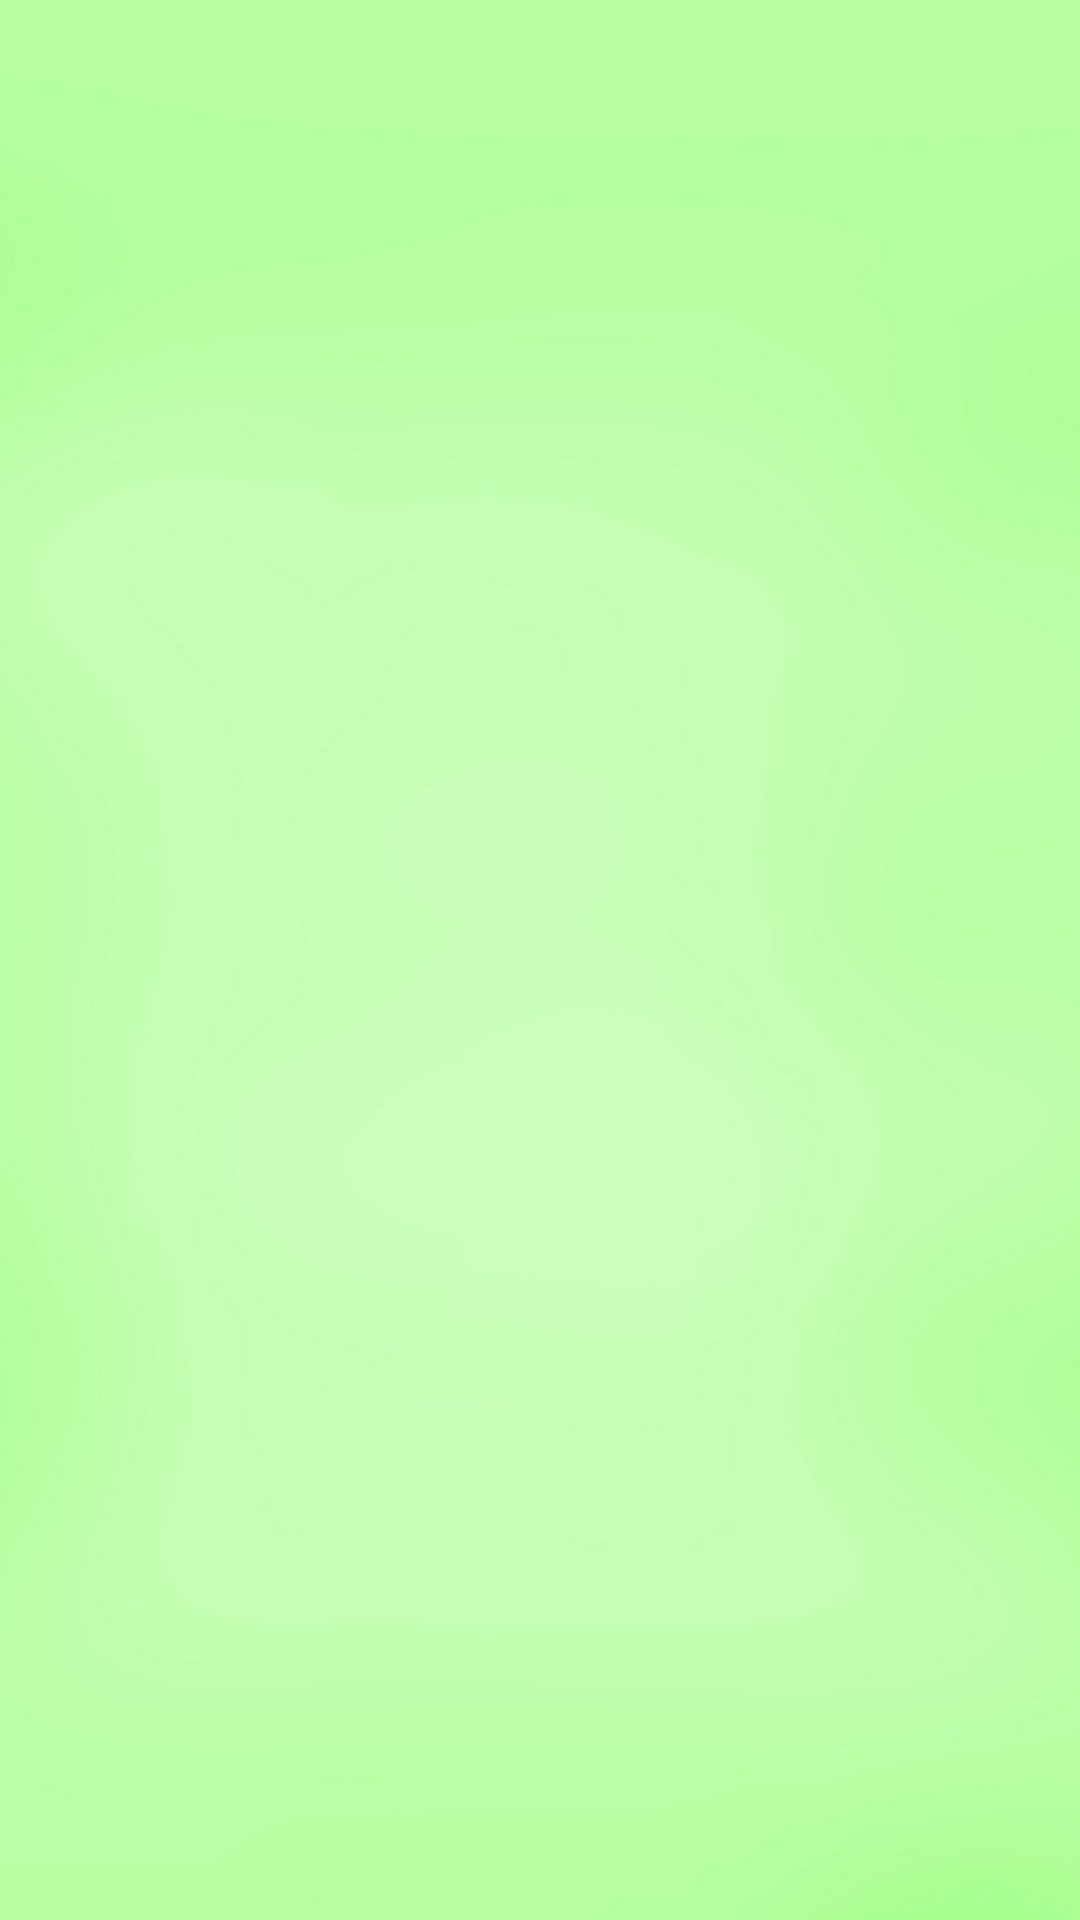 light green wallpaper,green,yellow,aqua,turquoise,grass